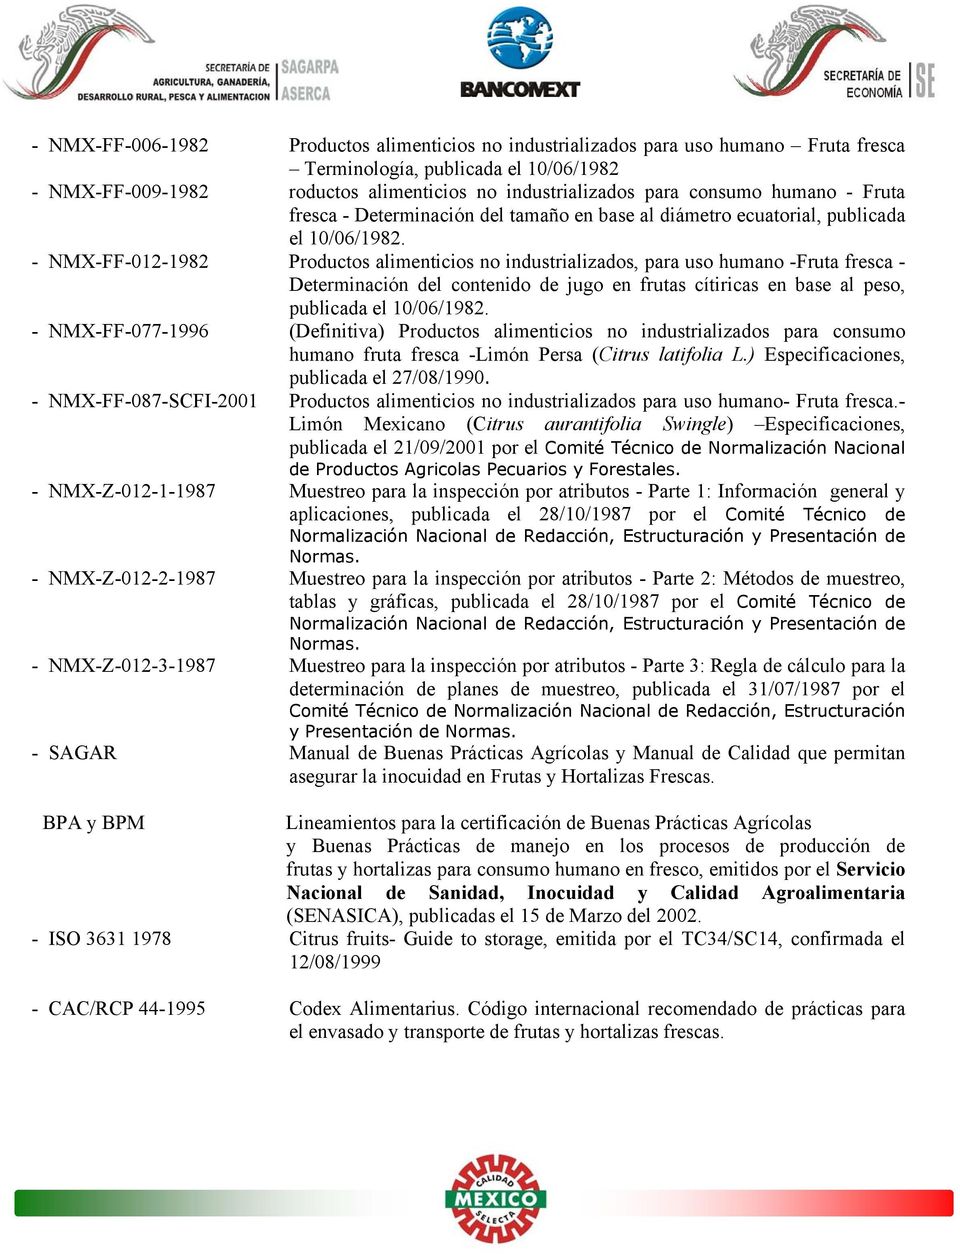 - NMX-FF-012-1982 Productos alimenticios no industrializados, para uso humano -Fruta fresca - Determinación del contenido de jugo en frutas cítiricas en base al peso, publicada el 10/06/1982.